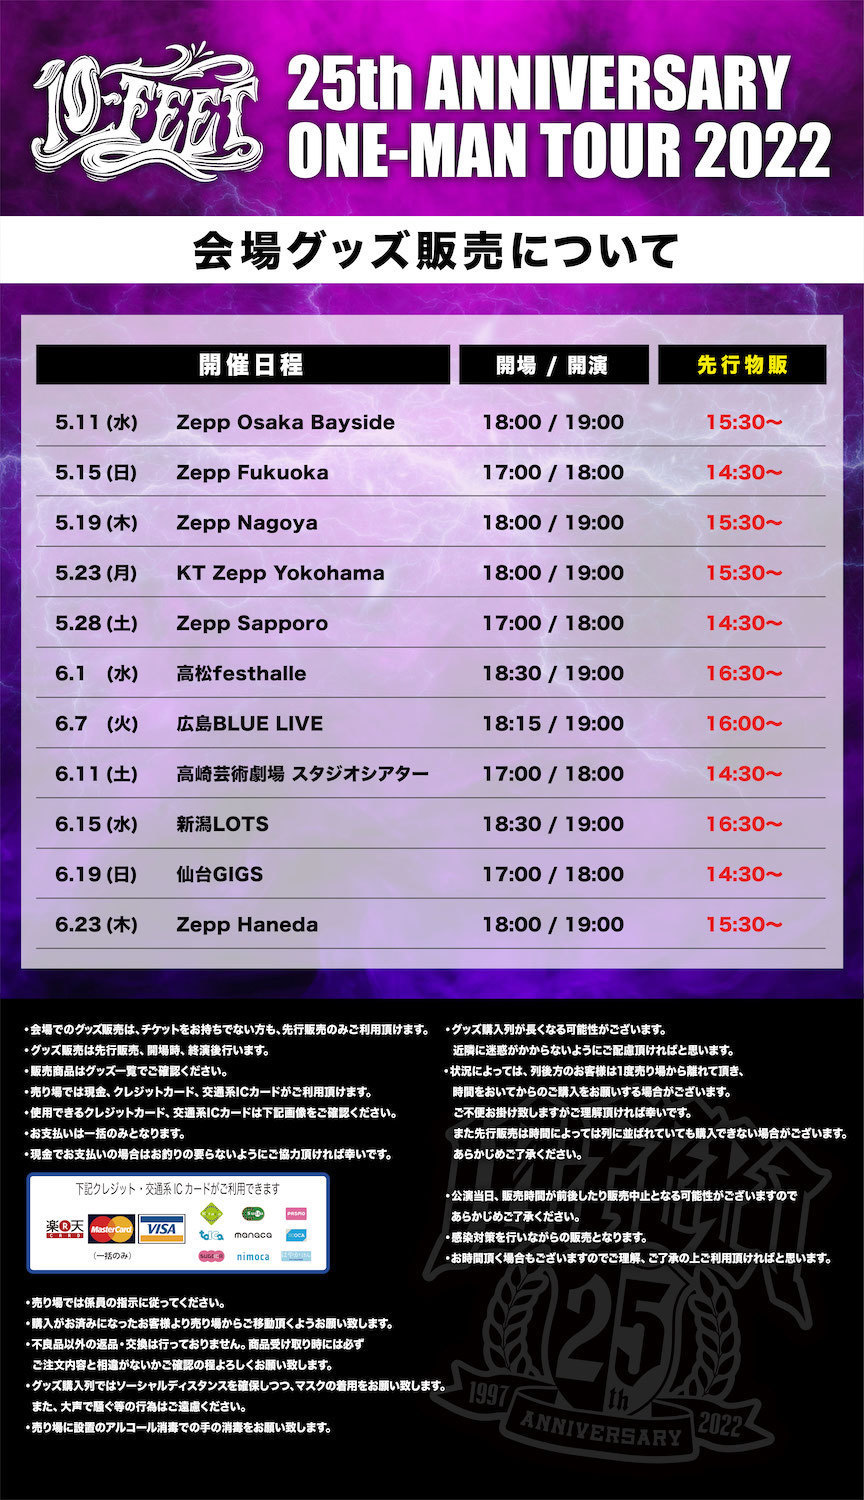 10-FEET 25th ANNIVERSARY ONE-MAN TOUR 20225.7(土) AM10:00〜 6月